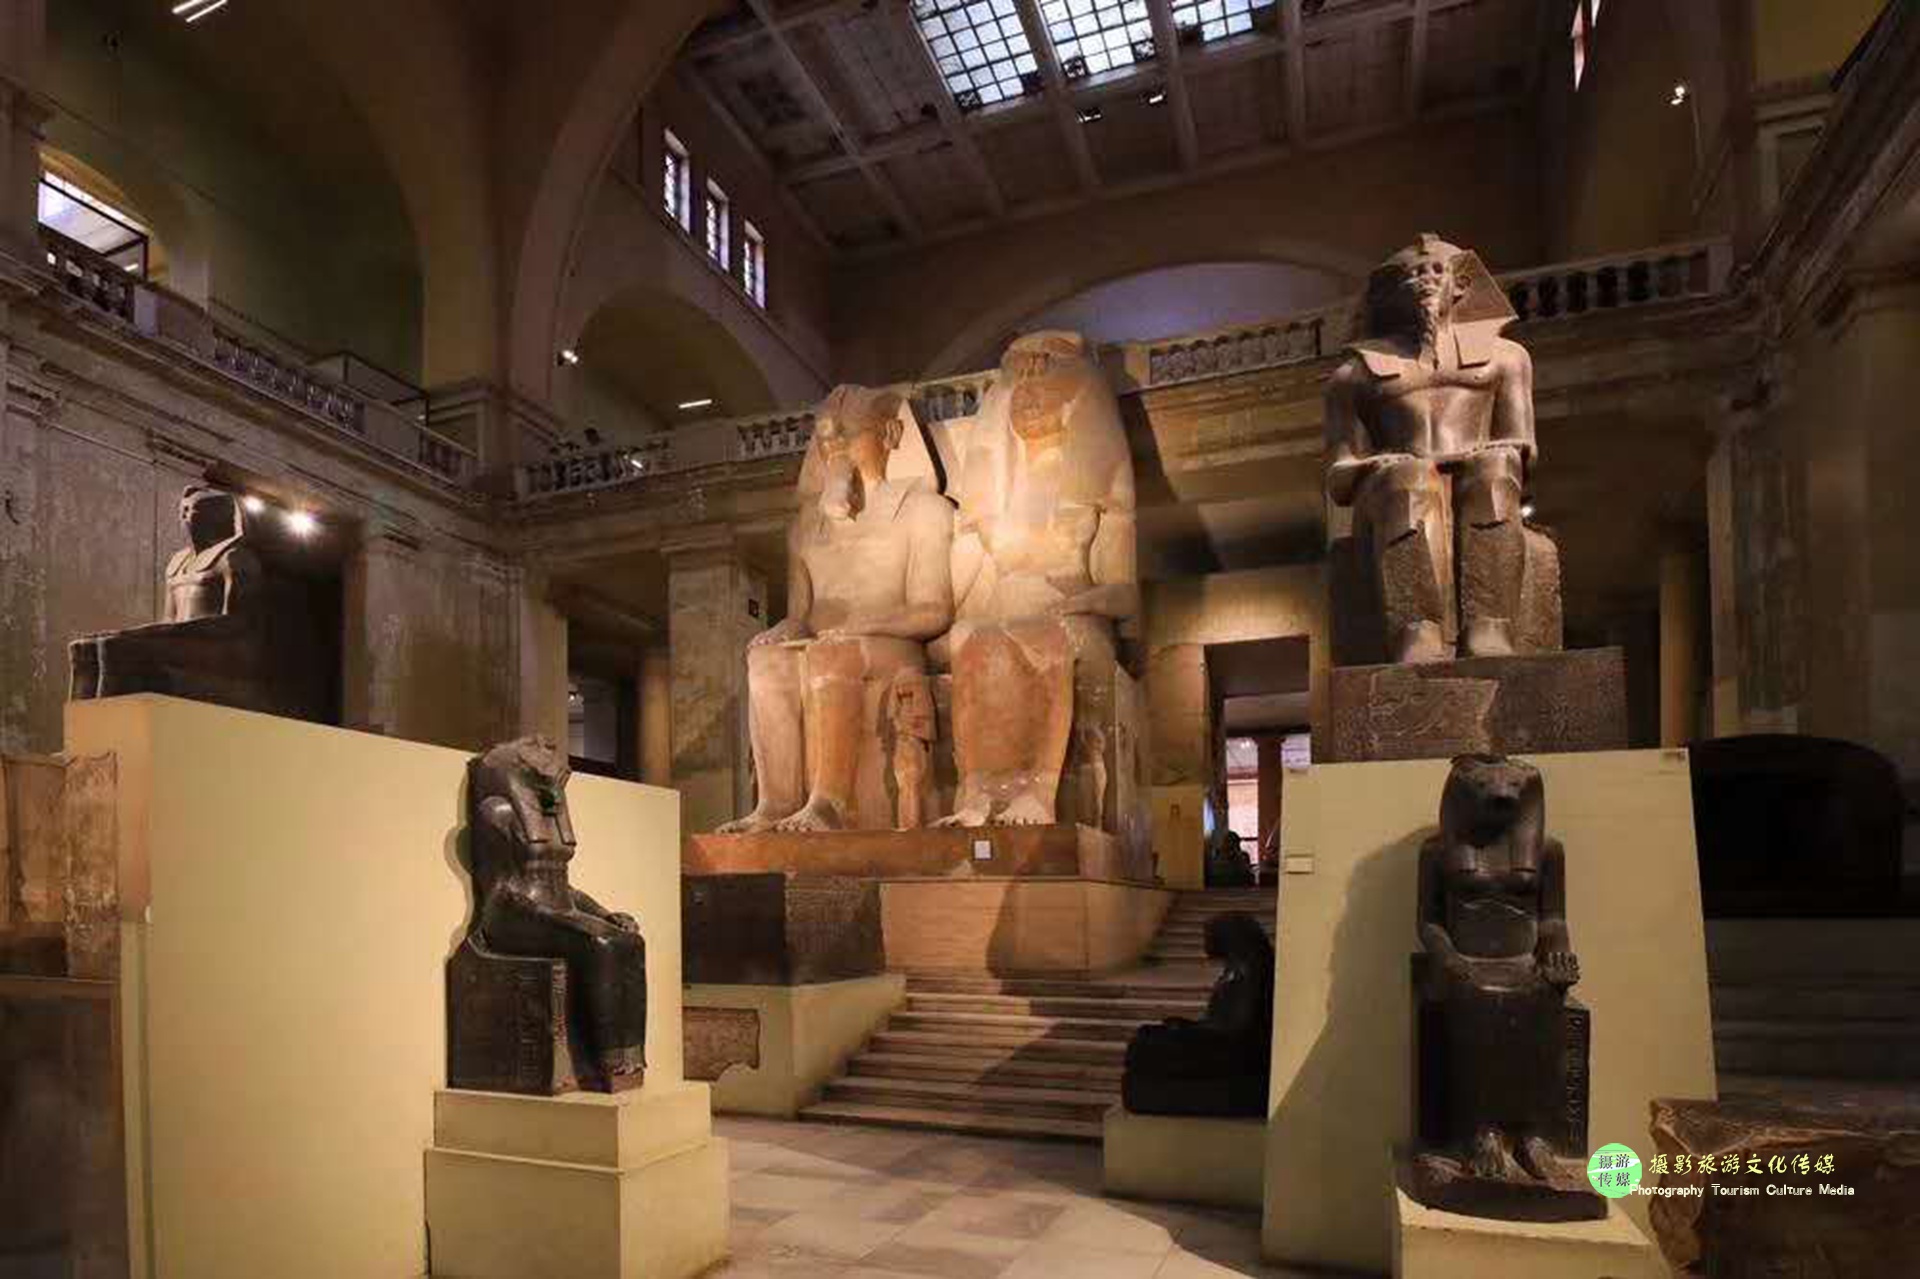 【镜游天下】埃及博物馆,走进神秘的法老世界-1